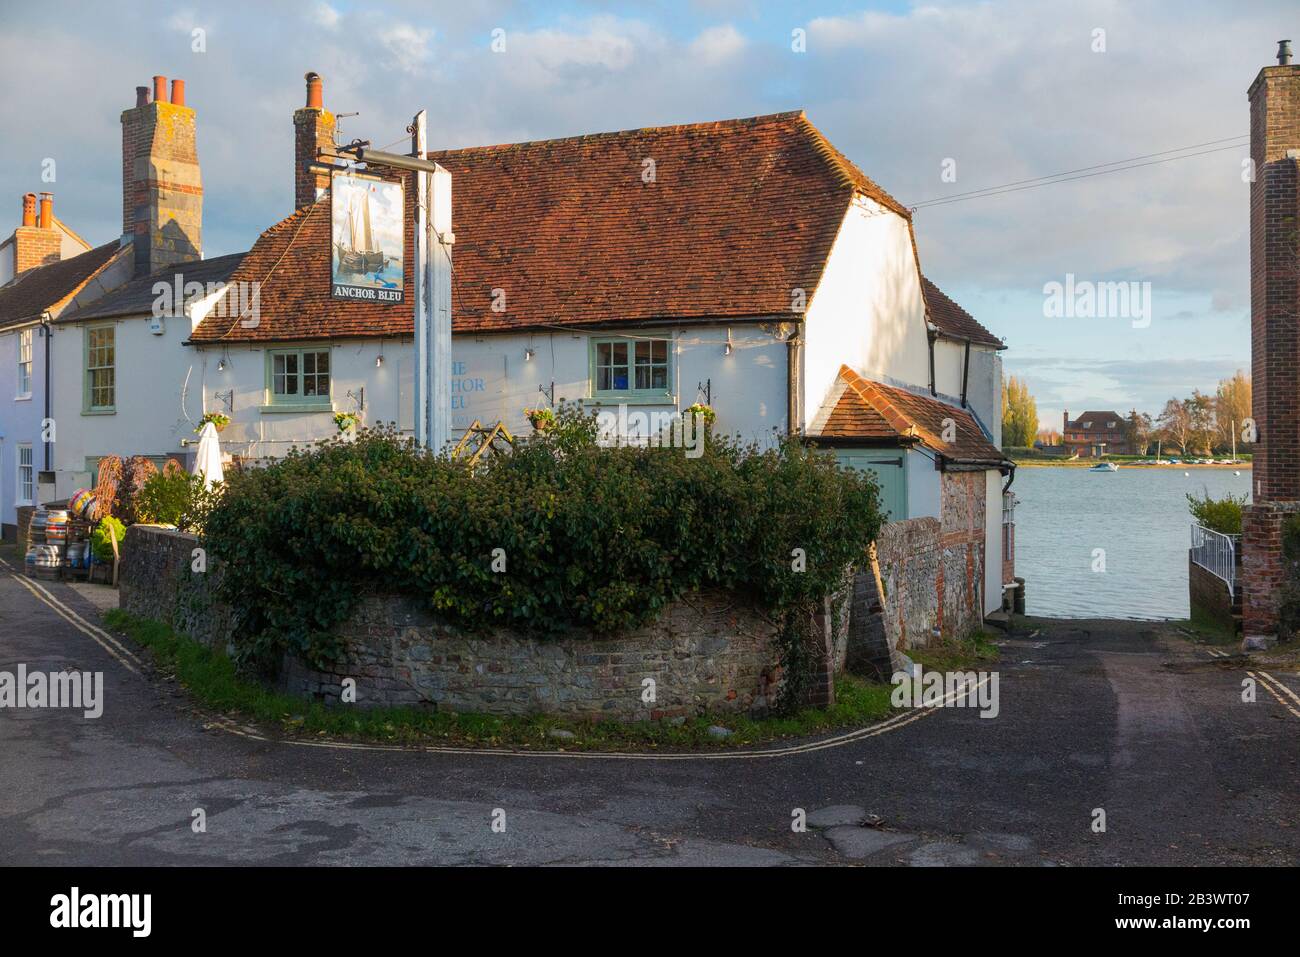 Vu de l'extérieur, l'Anchor Bleu – Anglais; l'Anchor Bleu – pub / maison publique avec signe sur la High Street, Bosham, Chichester PO18 8 LS. West Sussex. ROYAUME-UNI (114) Banque D'Images